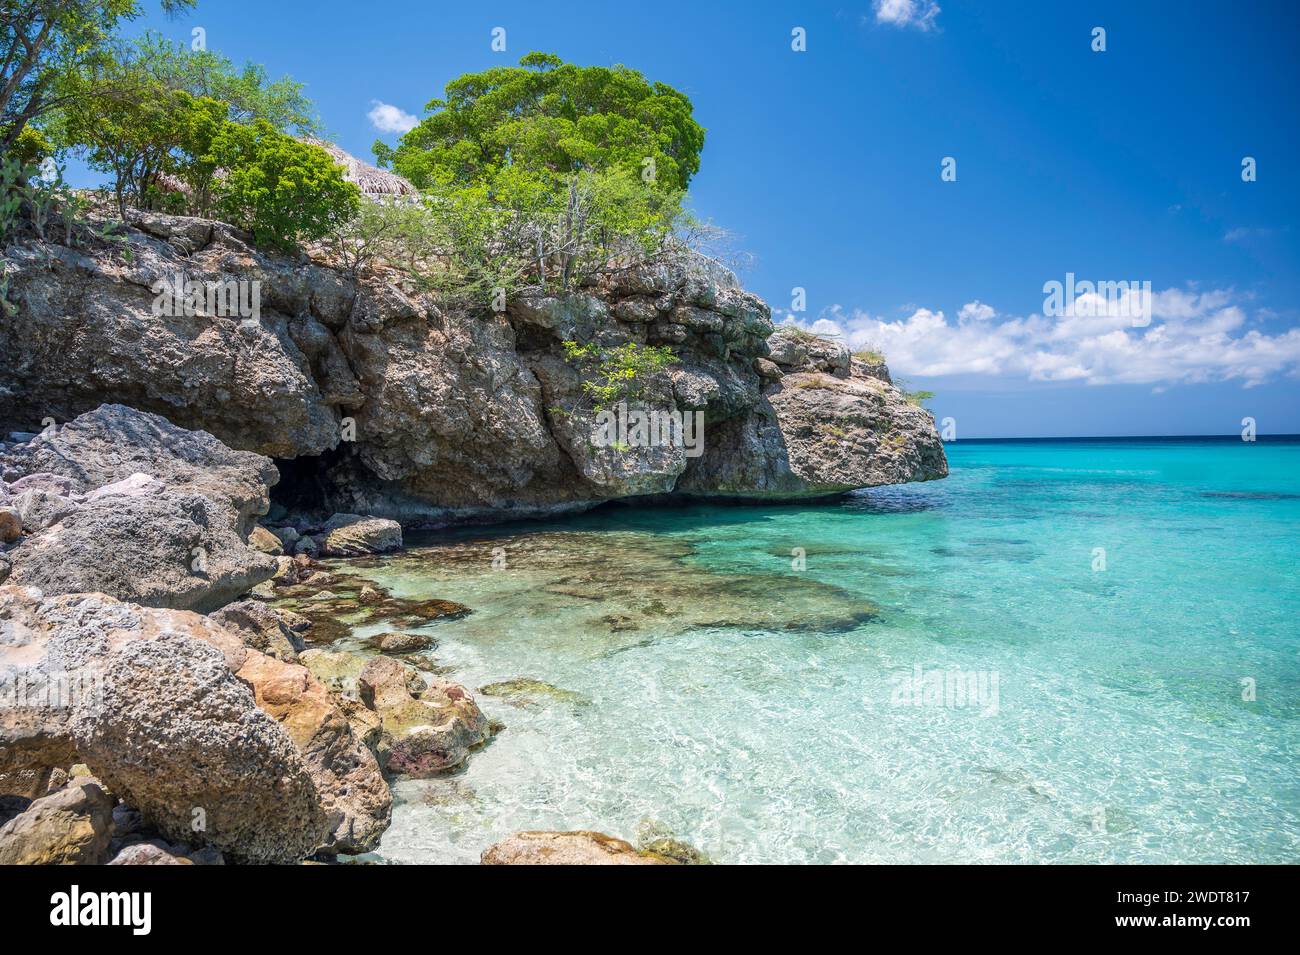 Das kristallklare türkisfarbene Meer am Grote Knip Beach, berühmt für sein blaues Wasser, auf der niederländischen Karibikinsel Curacao, Westindien, Karibik Stockfoto